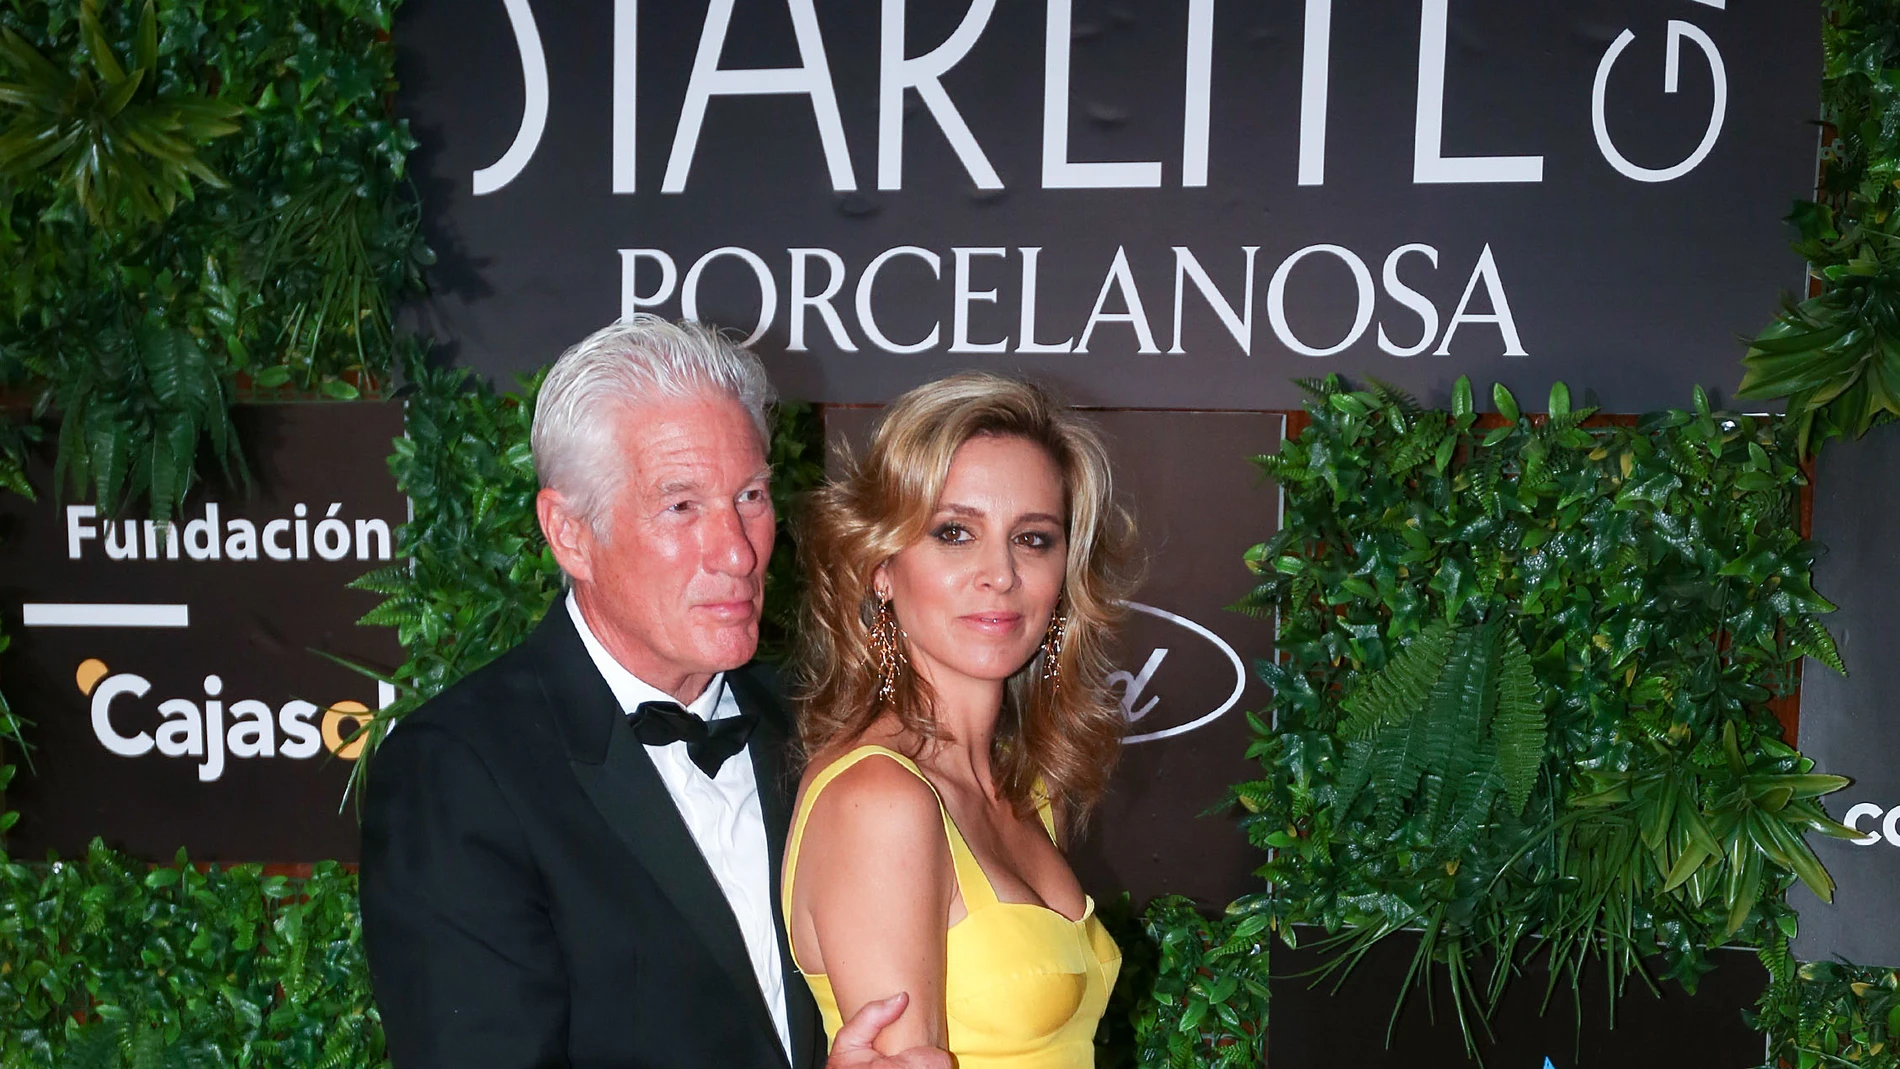 El actor estadounidense Richard Gere y su esposa Alejandra Silva posan a su llegada a la Gala Starlite, hoy domingo en Marbella, Málaga. EFE/ Daniel Pérez